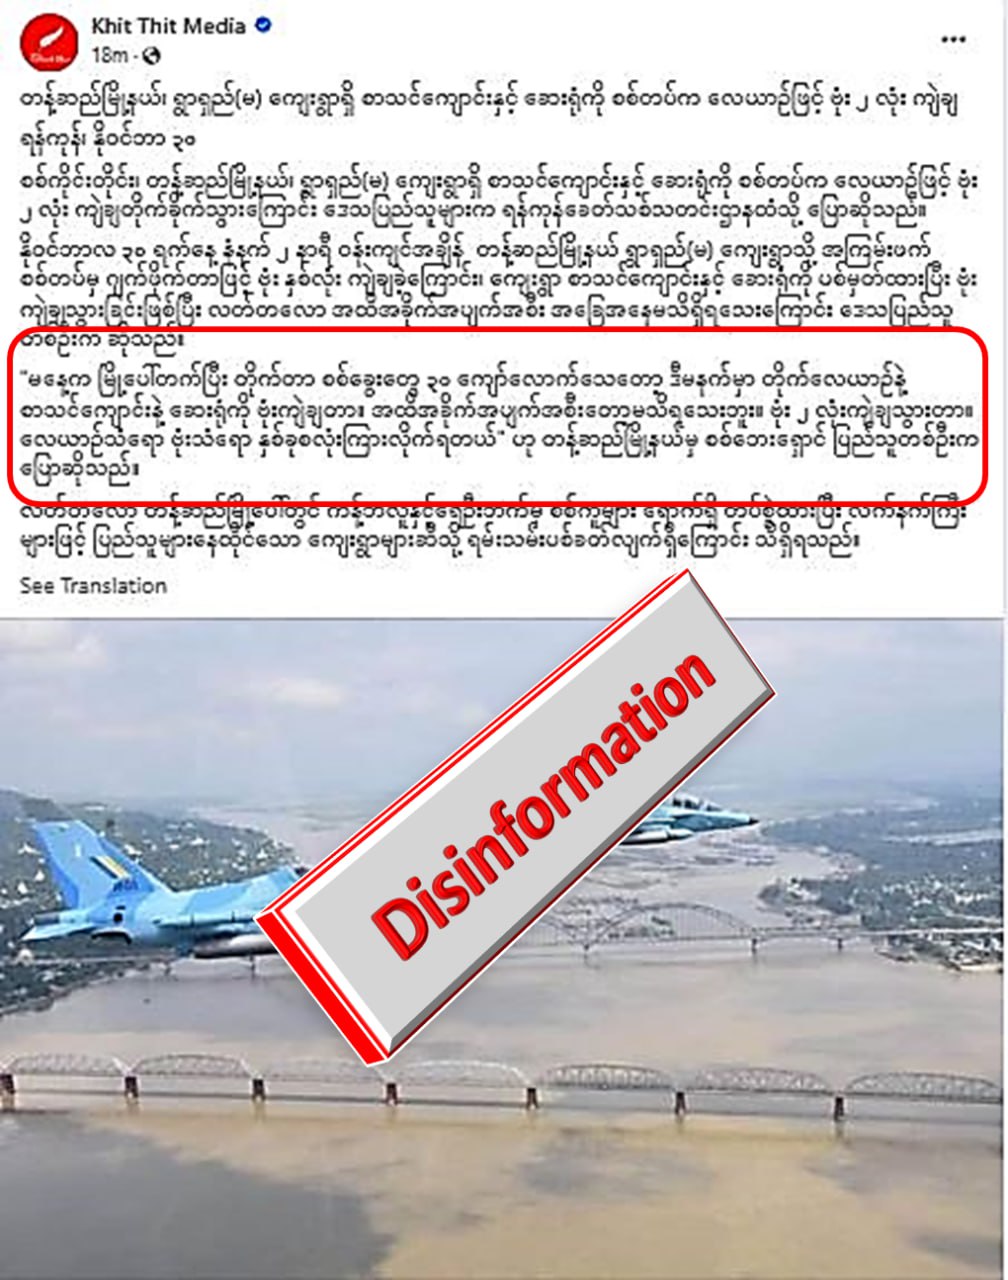 တန့်ဆည် လုံခြုံရေးတပ်ဖွဲ့ဝင် ၃၀ ကျော် သေဆုံးတယ်လို့ Khit Thit မှ သတင်းအမှားရေး